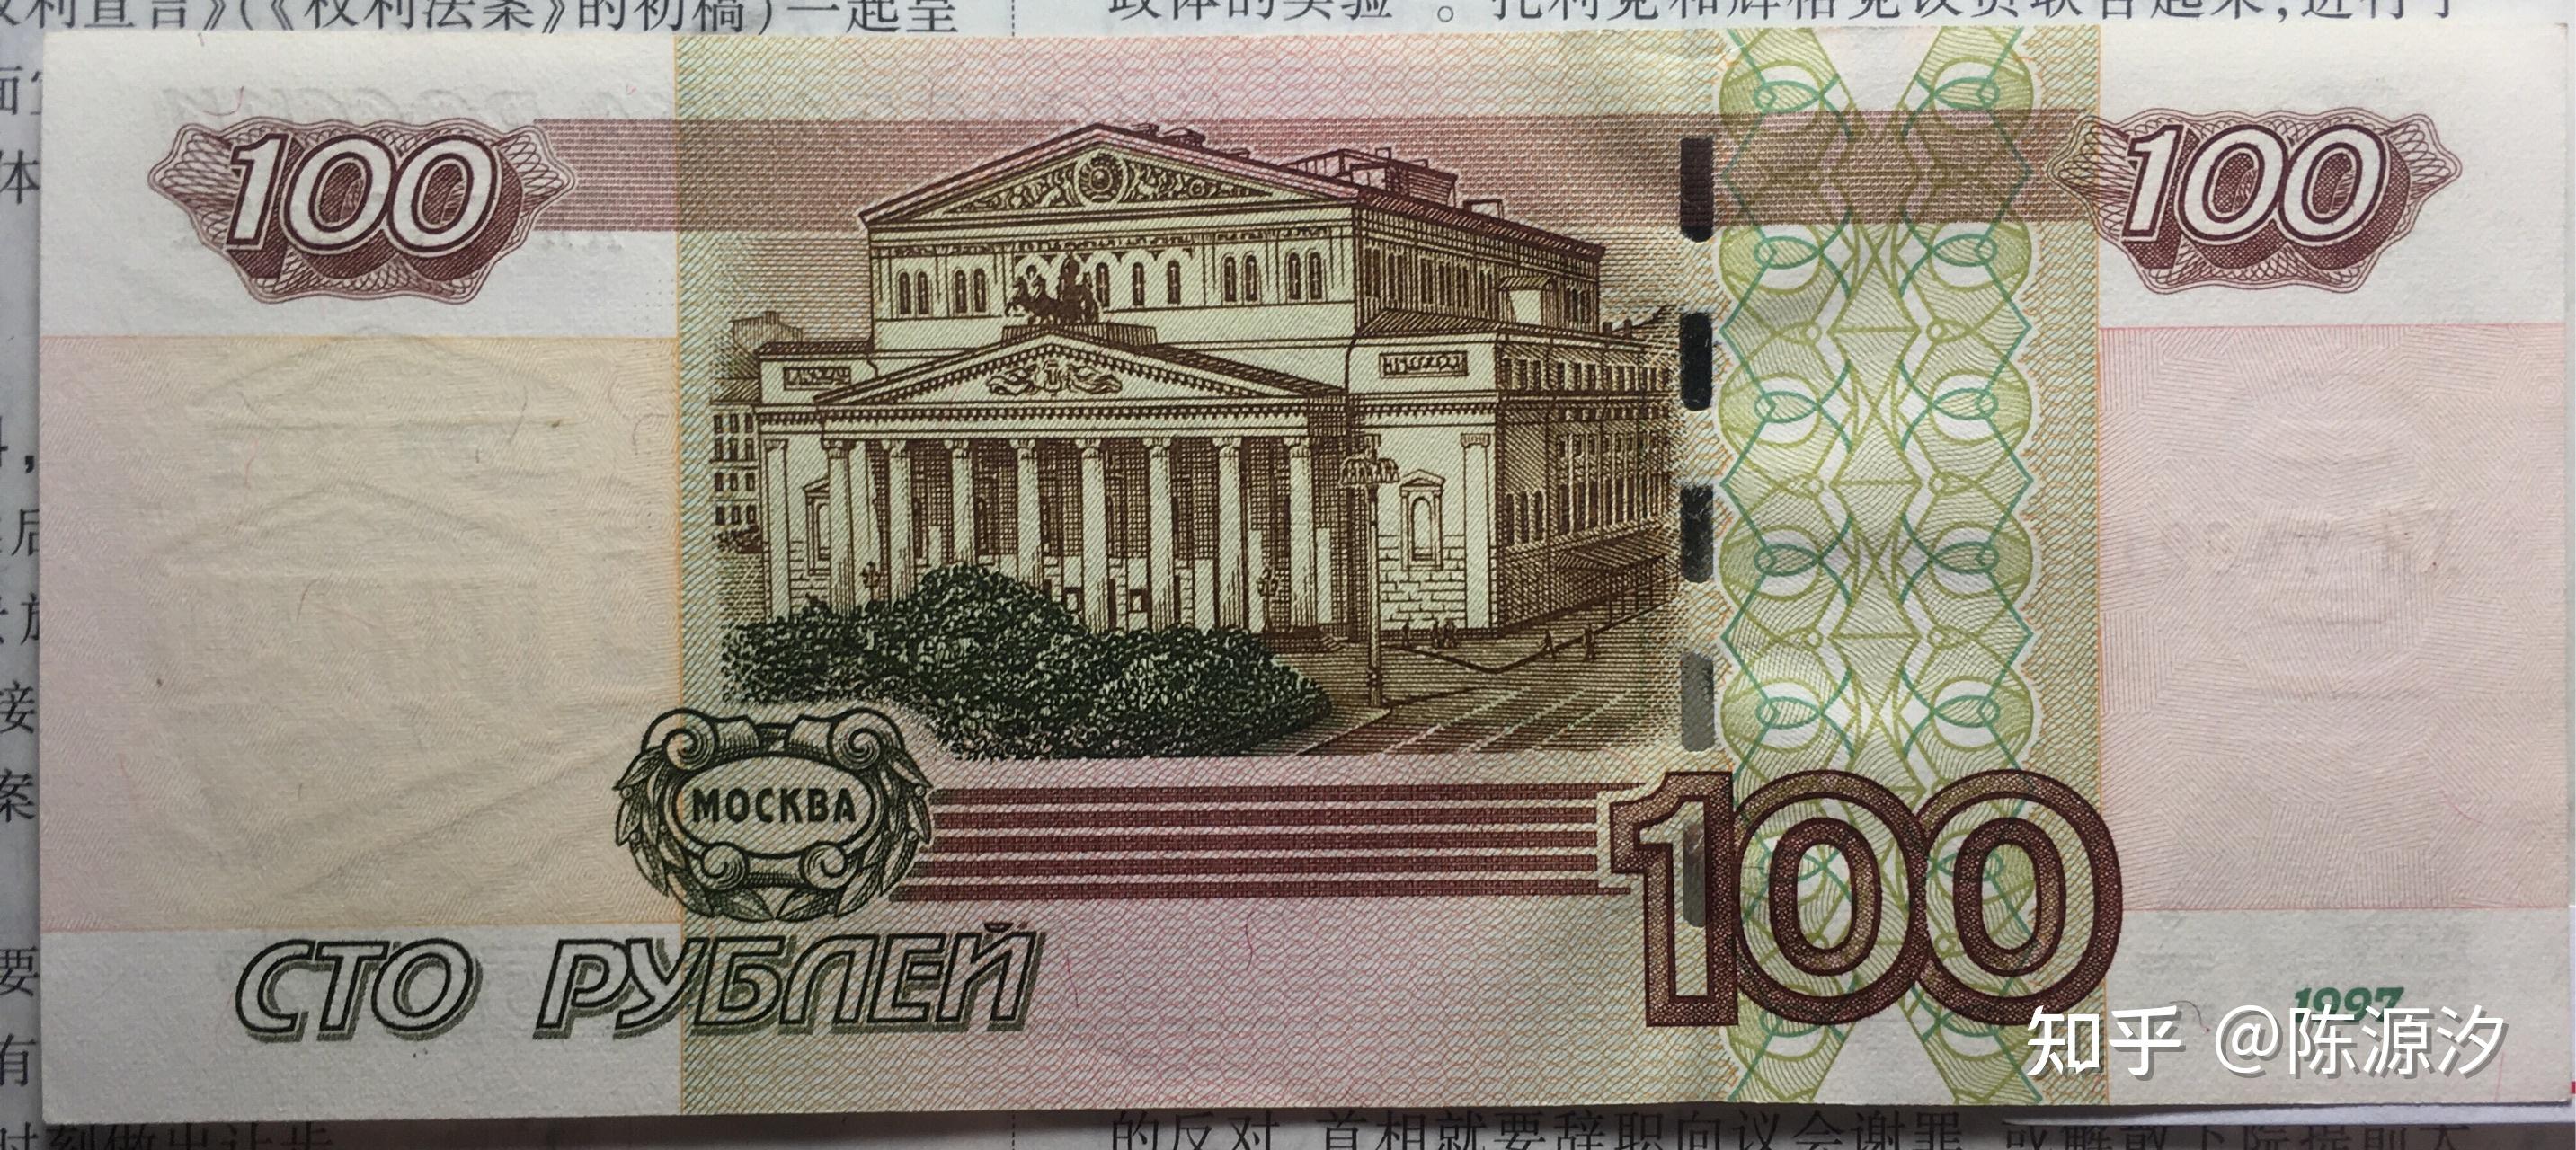 俄罗斯卢布纸币1997年版存档